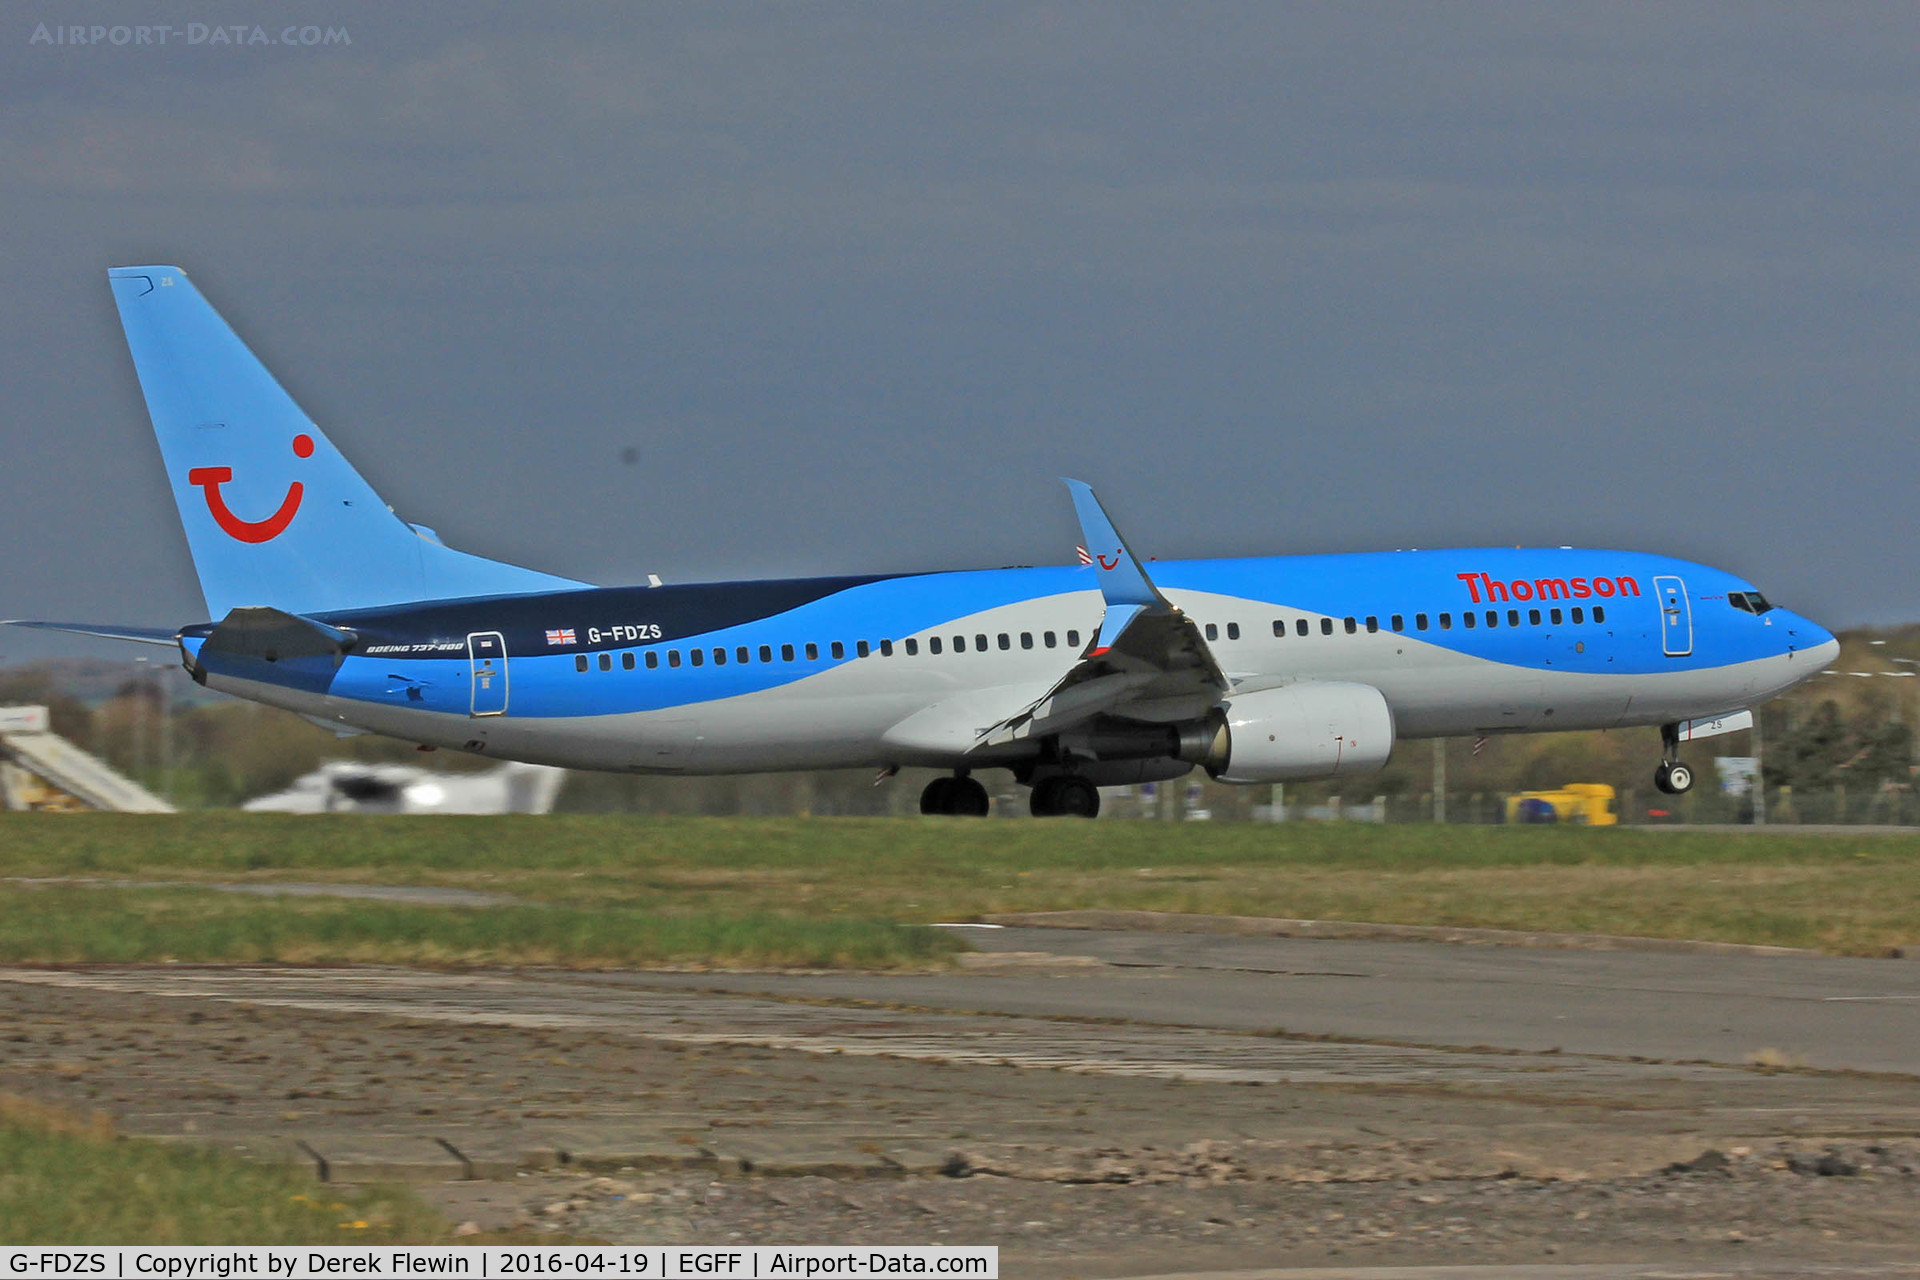 G-FDZS, 2009 Boeing 737-8K5 C/N 35147, 737-8K5, Thomson Airways, call sign Thomson 83D, seen departing runway 12 en-route to Tenerife Sur.